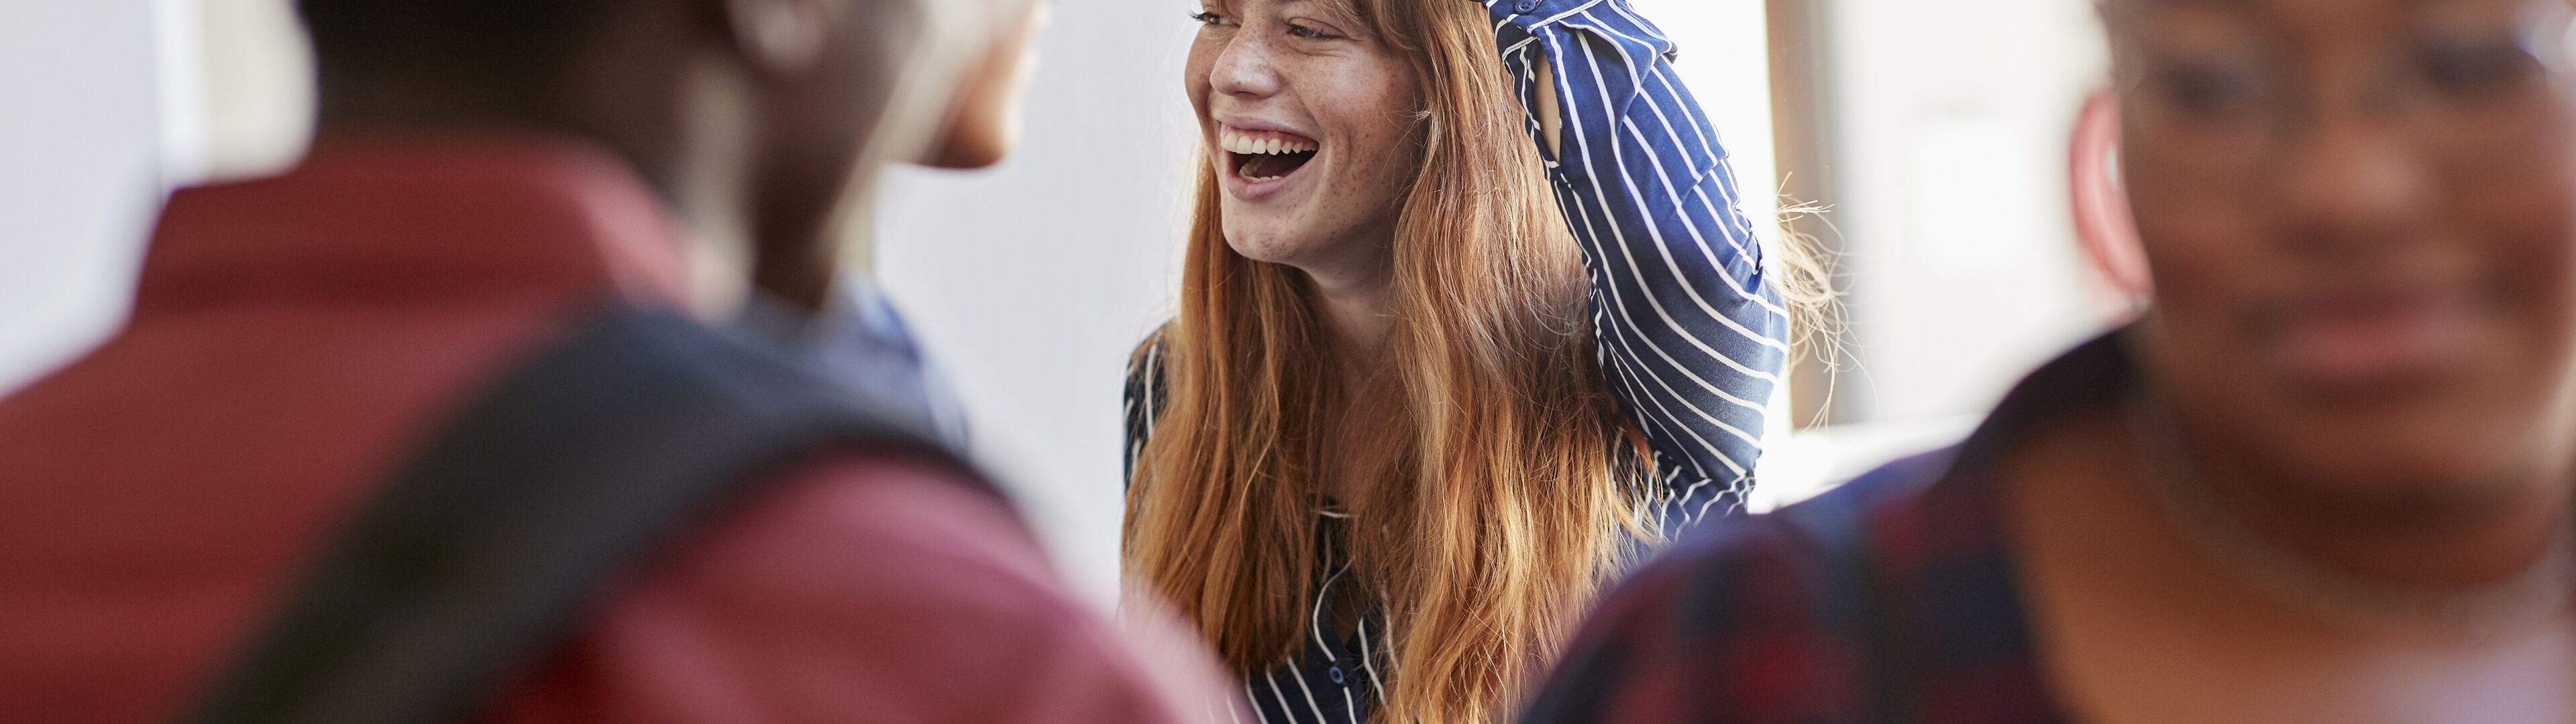 Una dona riu alegrement, mà al cap, en una trobada d'amics.